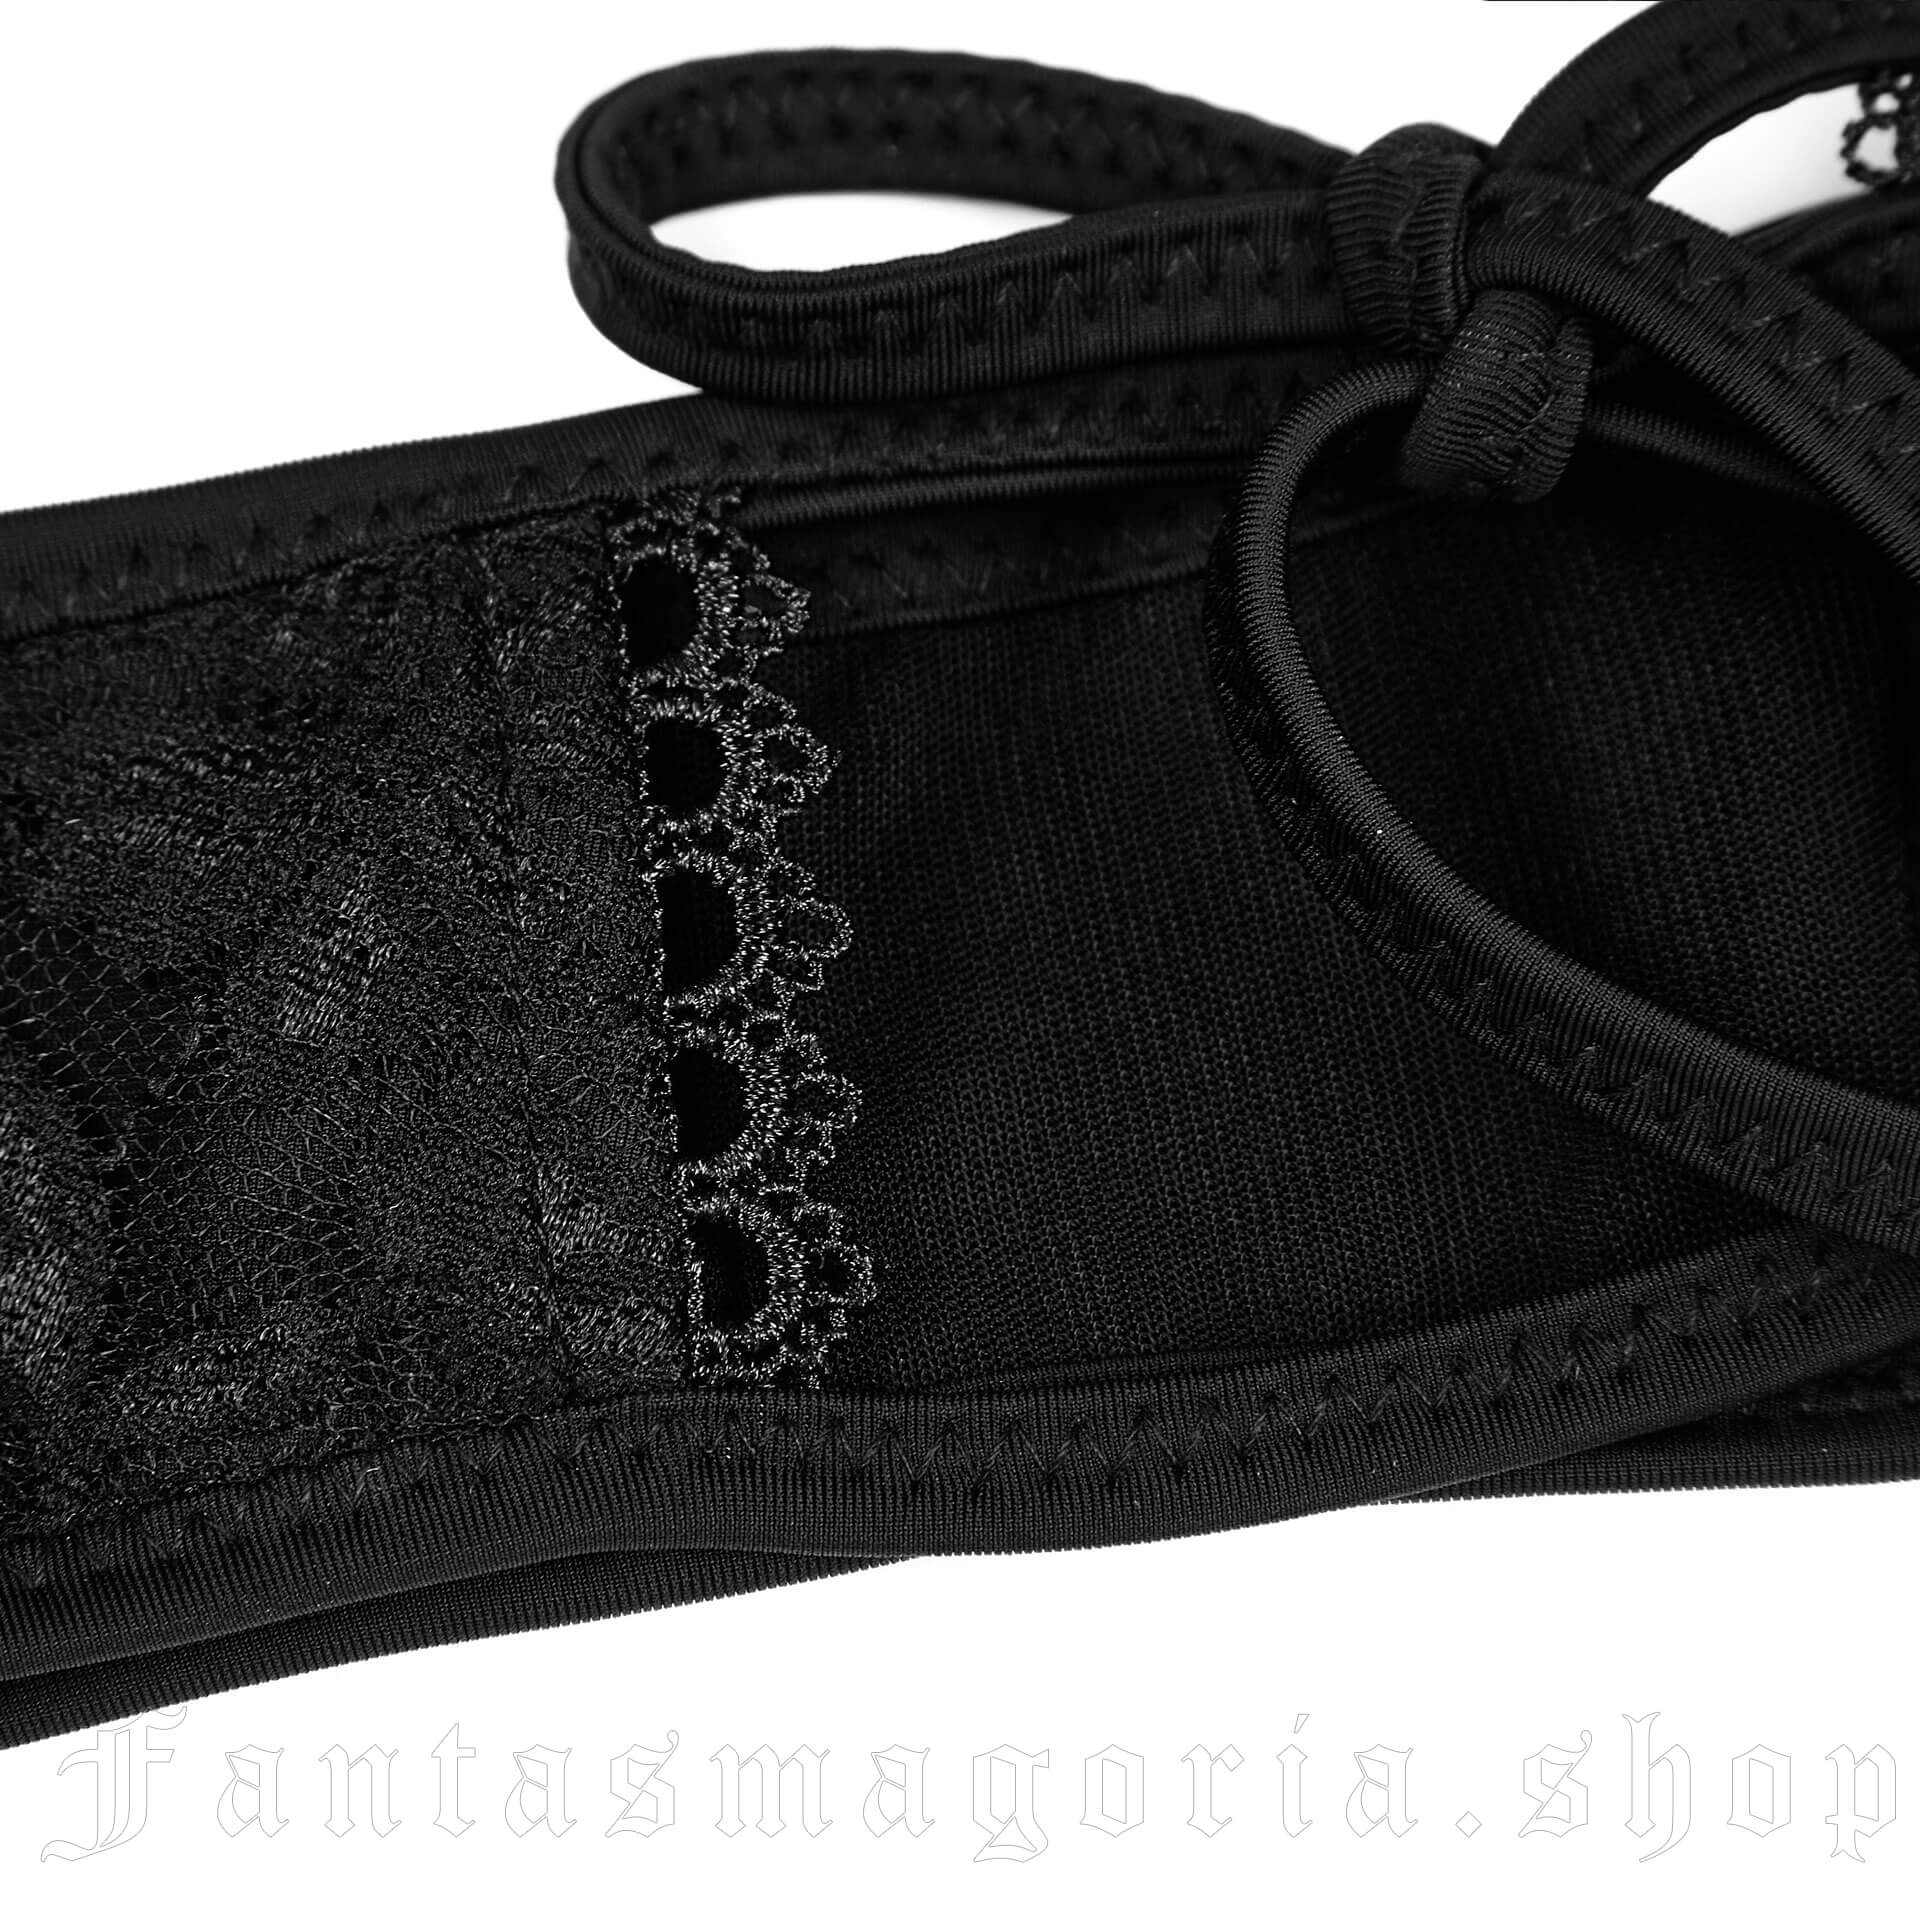 Black Brocade Panties WS-249 by PUNK RAVE brand